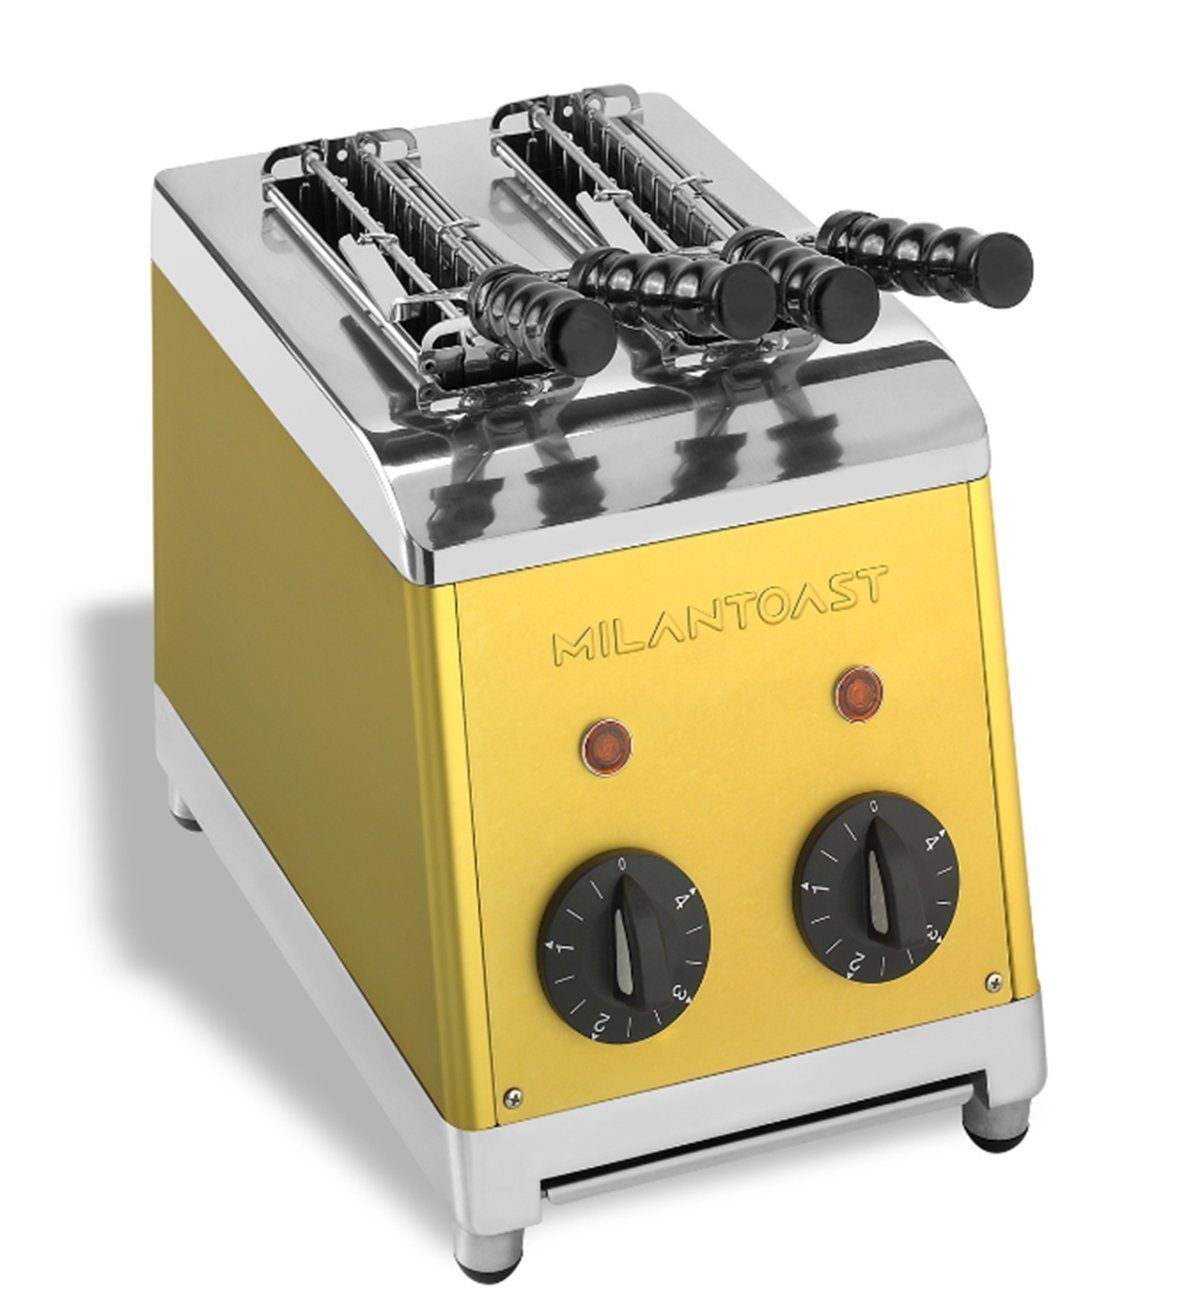 MILANTOAST Toaster Milantoast Sandwichtoaster mit Zangen